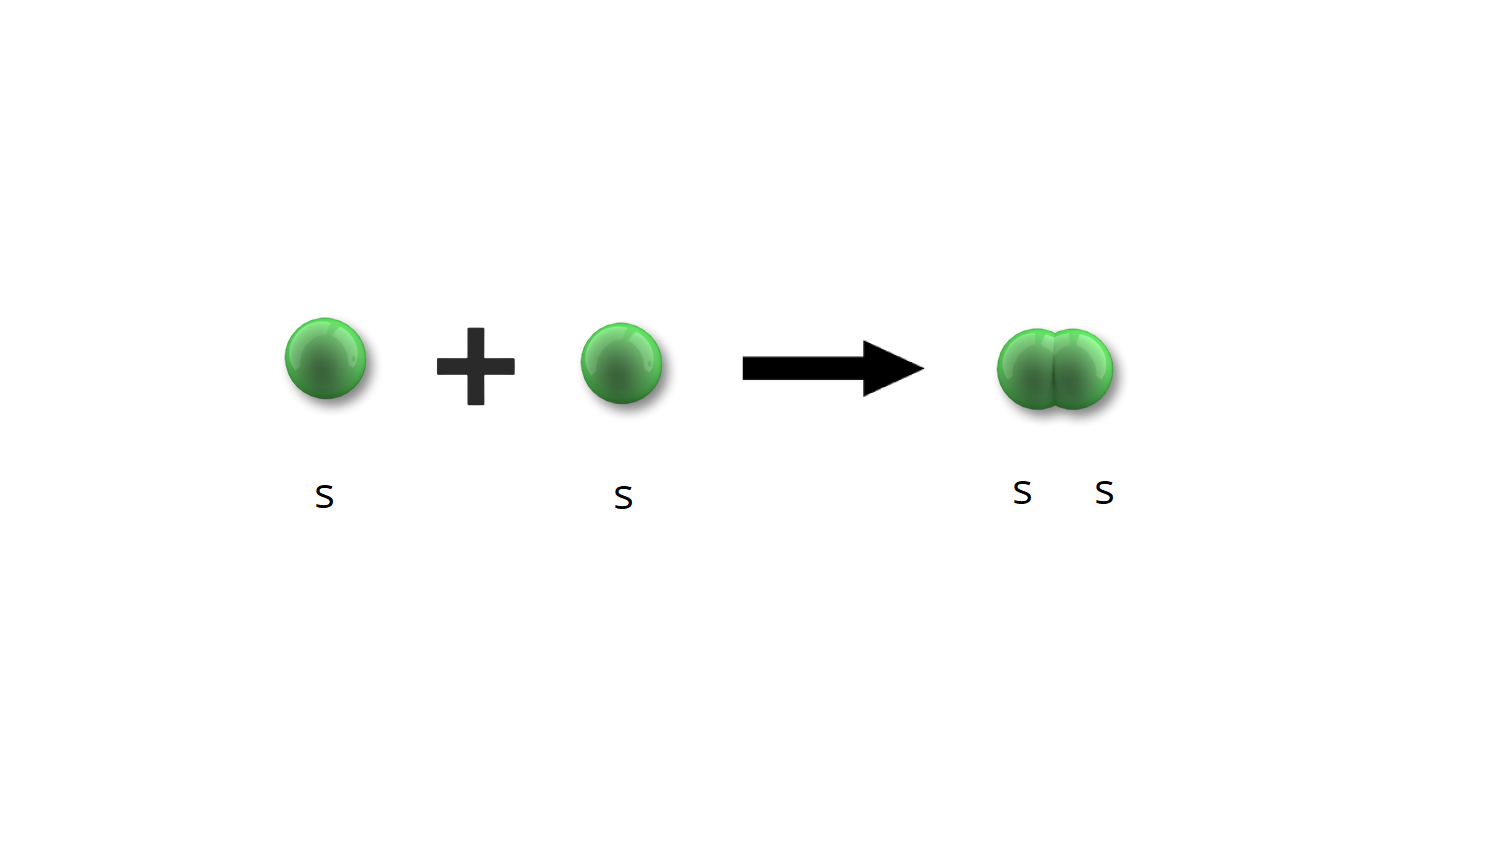 Na ilustracji znajduje się kulka podpisana literą s dodać kulka podpisana literą s dają dwie połączone ze sobą kulki s.